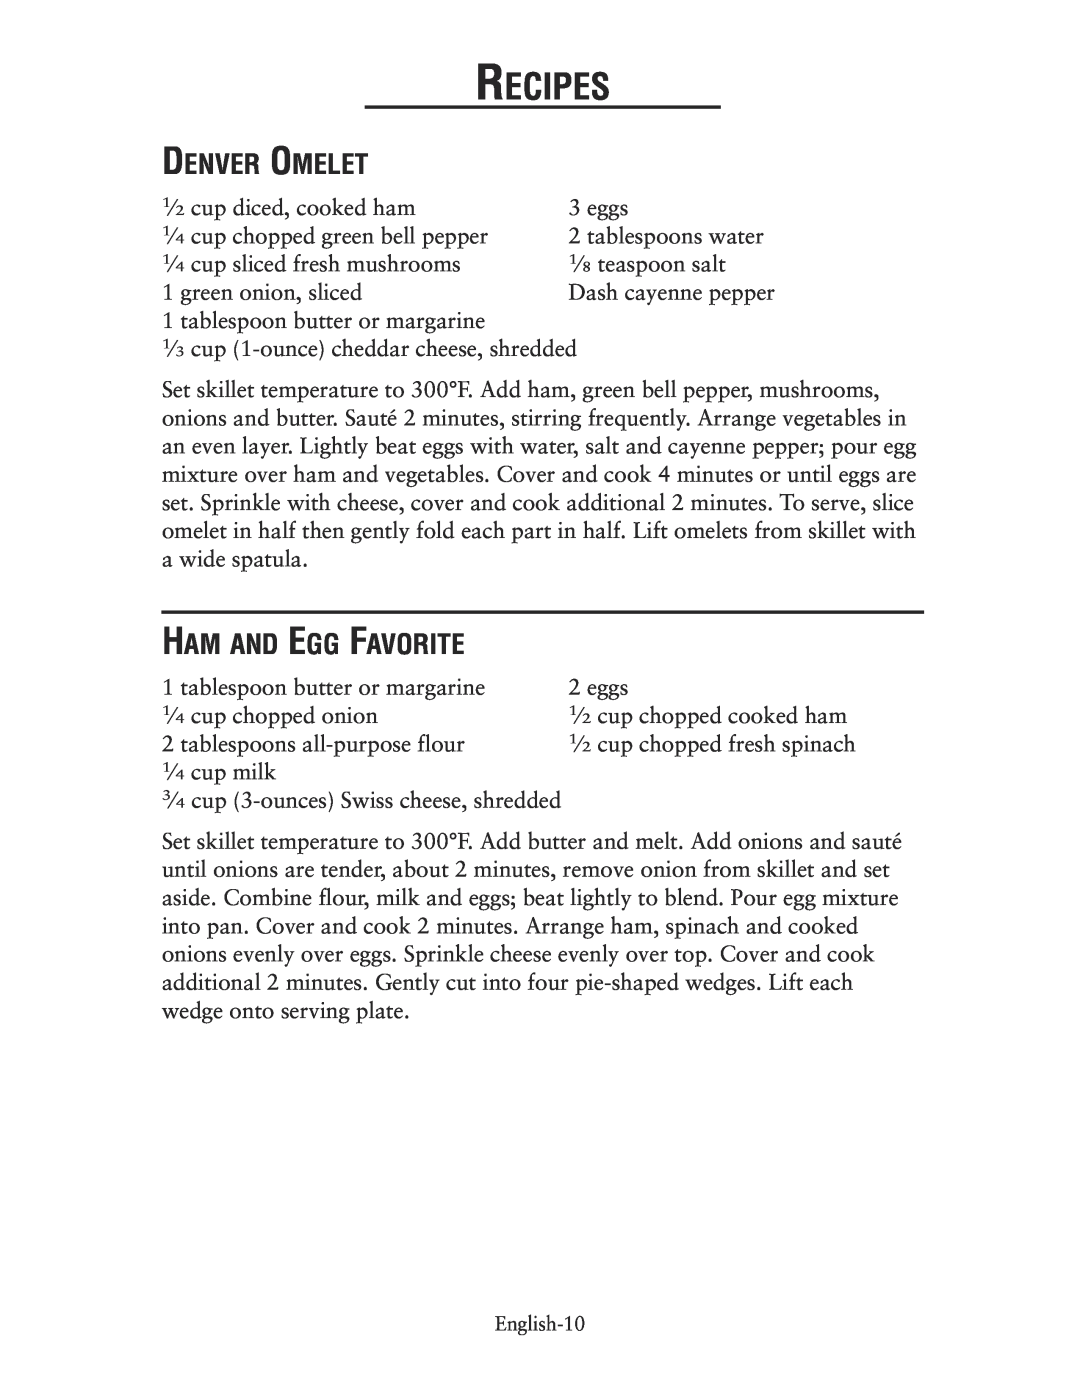 Oster CKSTSKRM20 user manual Denver Omelet, Ham And Egg Favorite, Recipes 